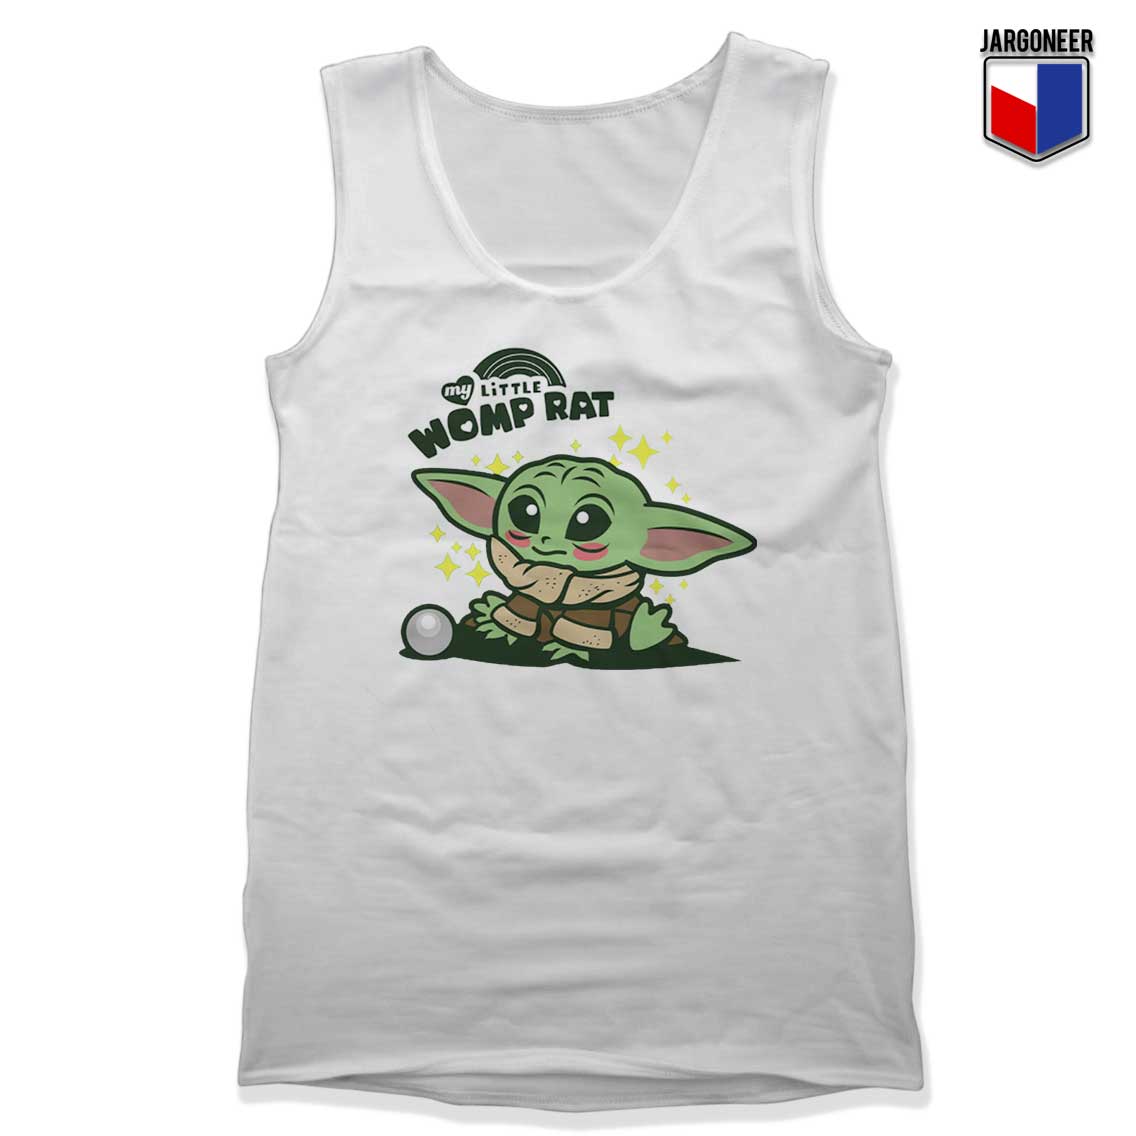 My Little Womp Rat Yoda Tank Top - Shop Unique Graphic Cool Shirt Designs